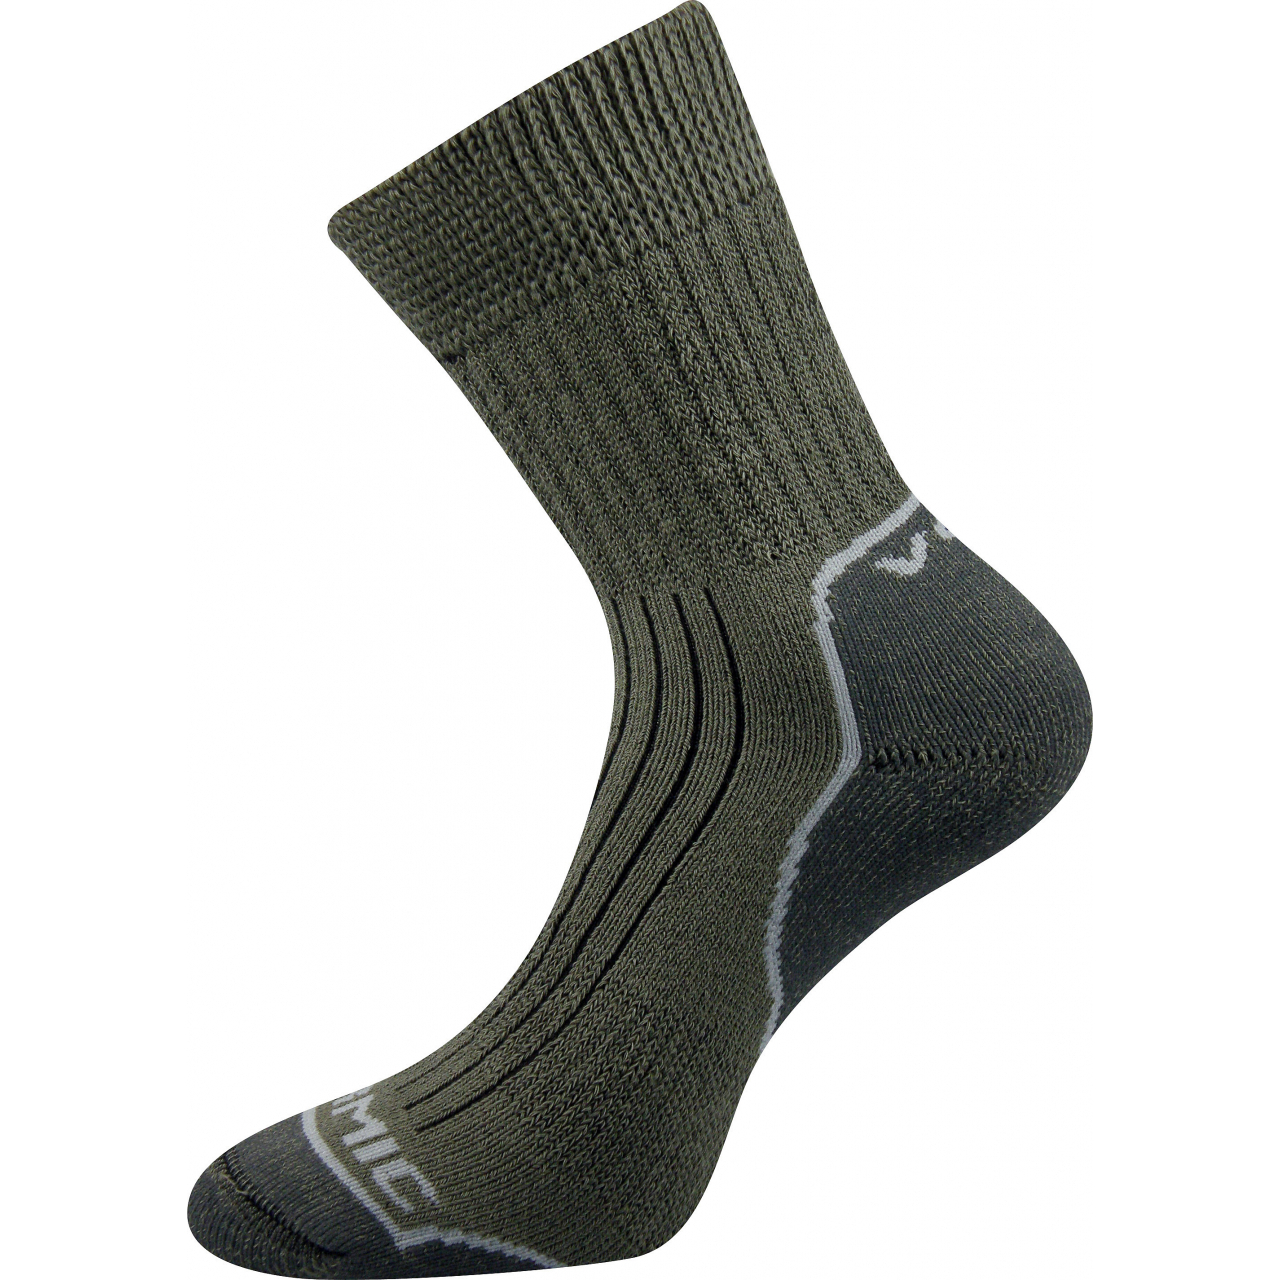 Ponožky unisex termo Voxx Zenith L + P - olivové-šedé, 35-37